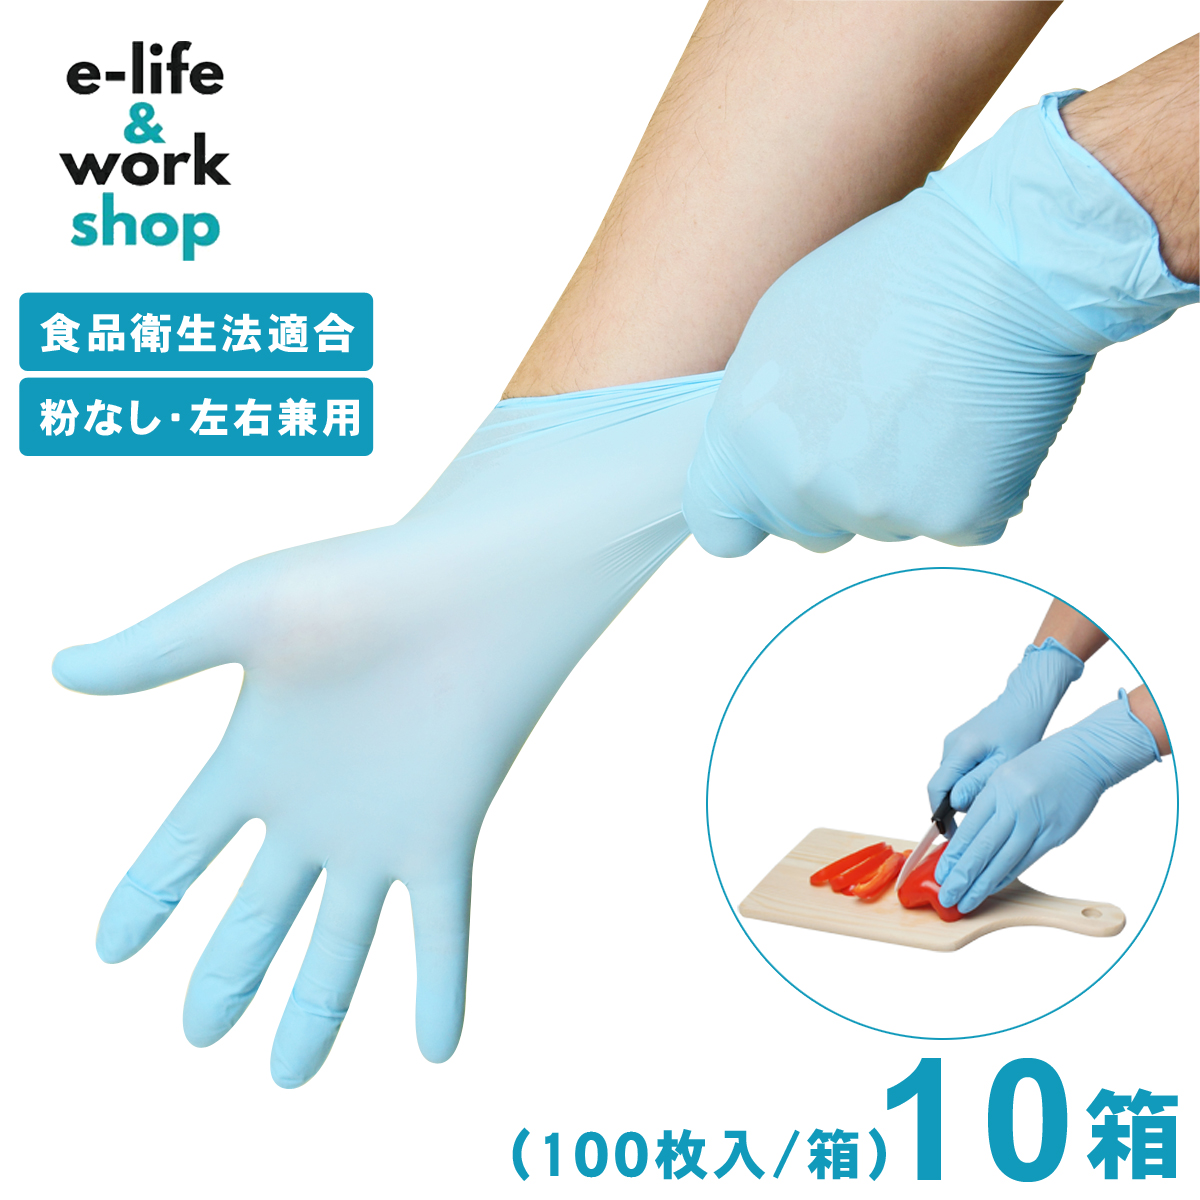 【楽天市場】ニトリル手袋 青 パウダーフリー 2000枚 (100枚入×20